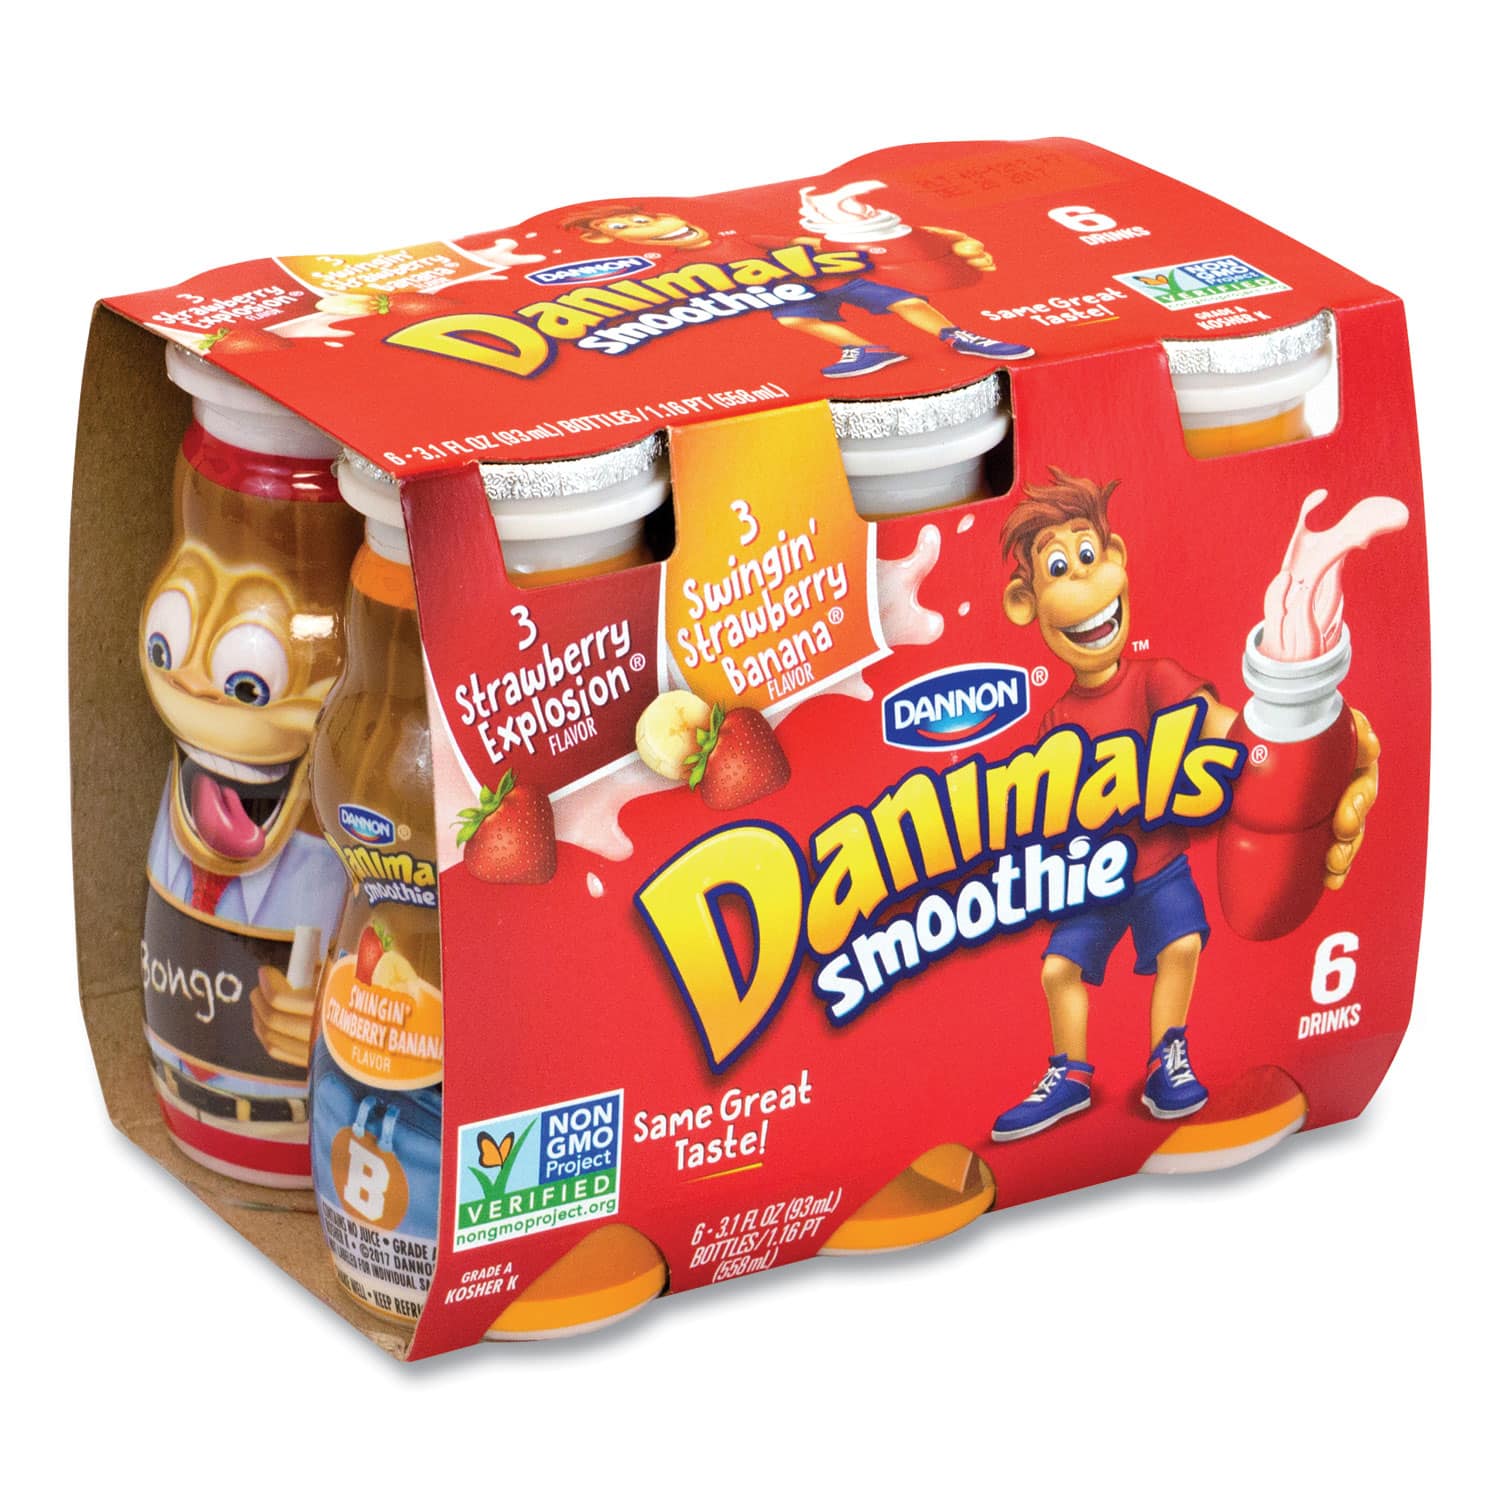 DANNONÂ® Danimals Smoothies, Assorted Flavors, 3.1 oz Bottle, 6/Box, 6 ...